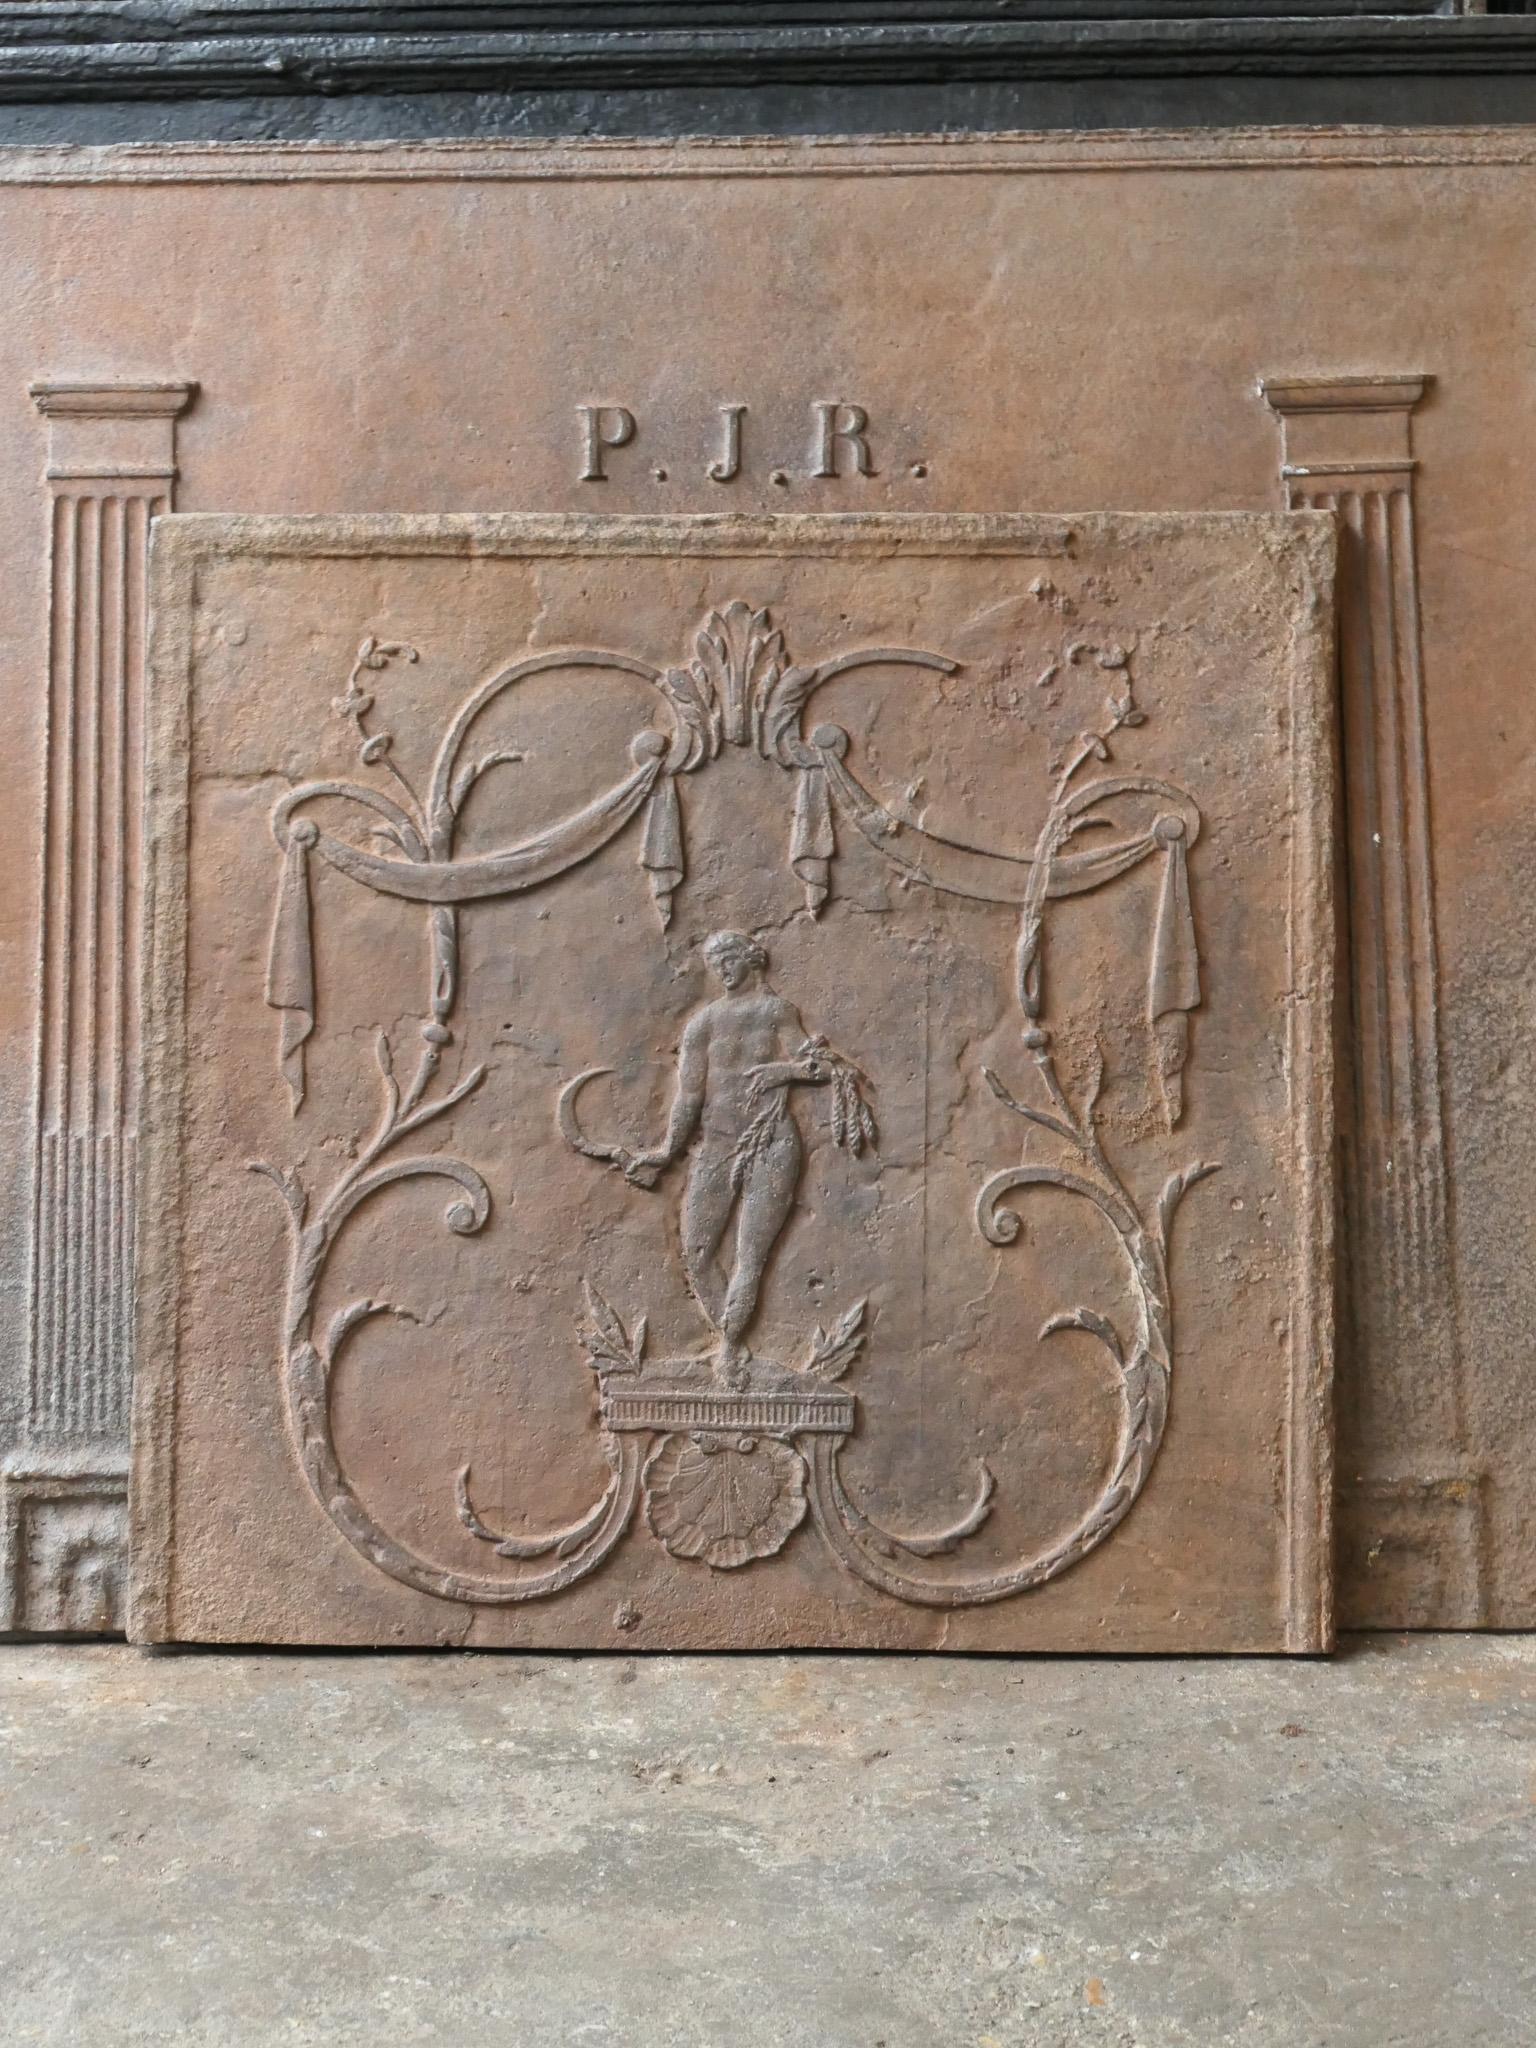 Plaque de cheminée néoclassique française du XIXe siècle représentant la déesse Cérès. Déesse de l'agriculture (en particulier des céréales) et de l'amour maternel.

La plaque de cheminée présente une patine naturelle brune. Sur demande, il peut